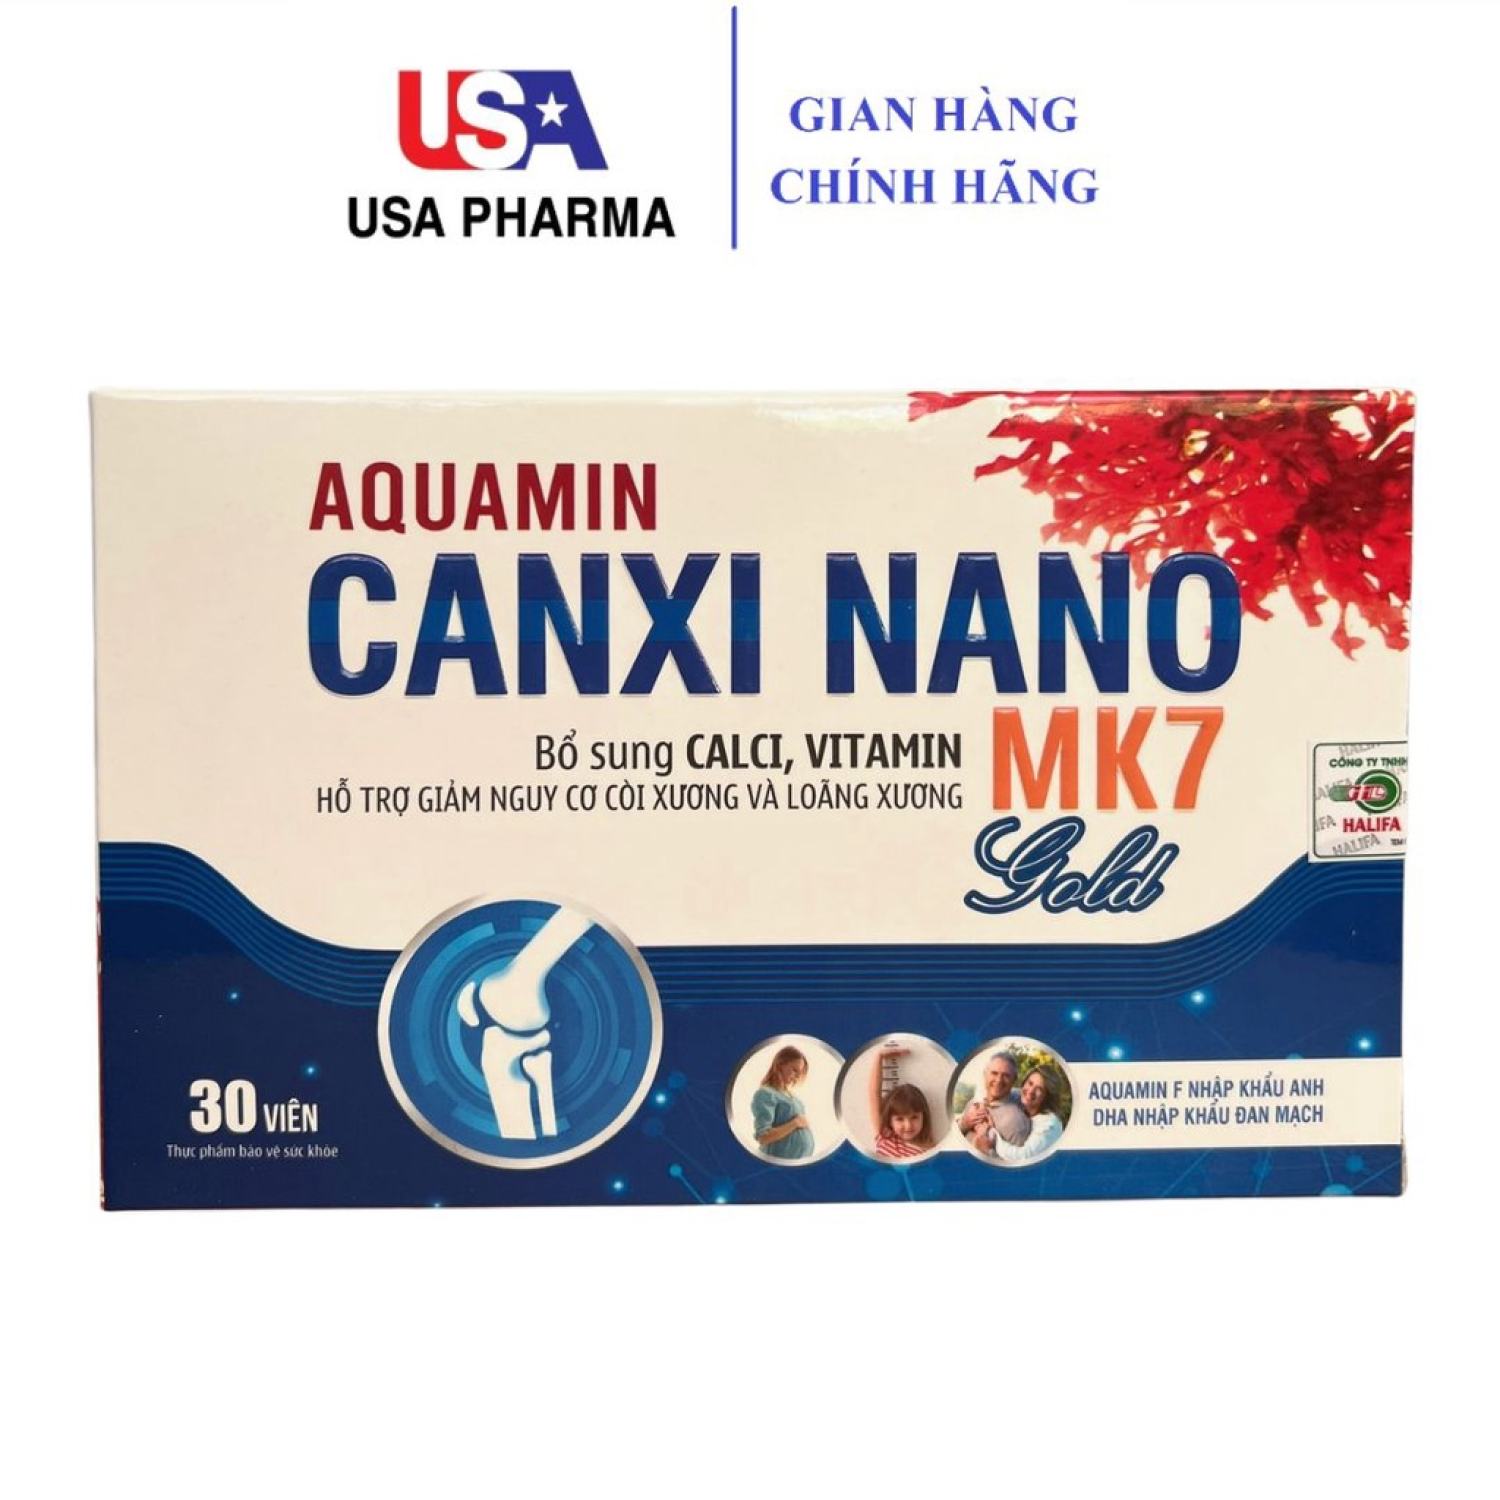 Aquamin Canxi Nano Mk7 Gold BỔ SUNG CANXI, Chống Còi Xương, Loãng Xương - Hộp 30 Viên